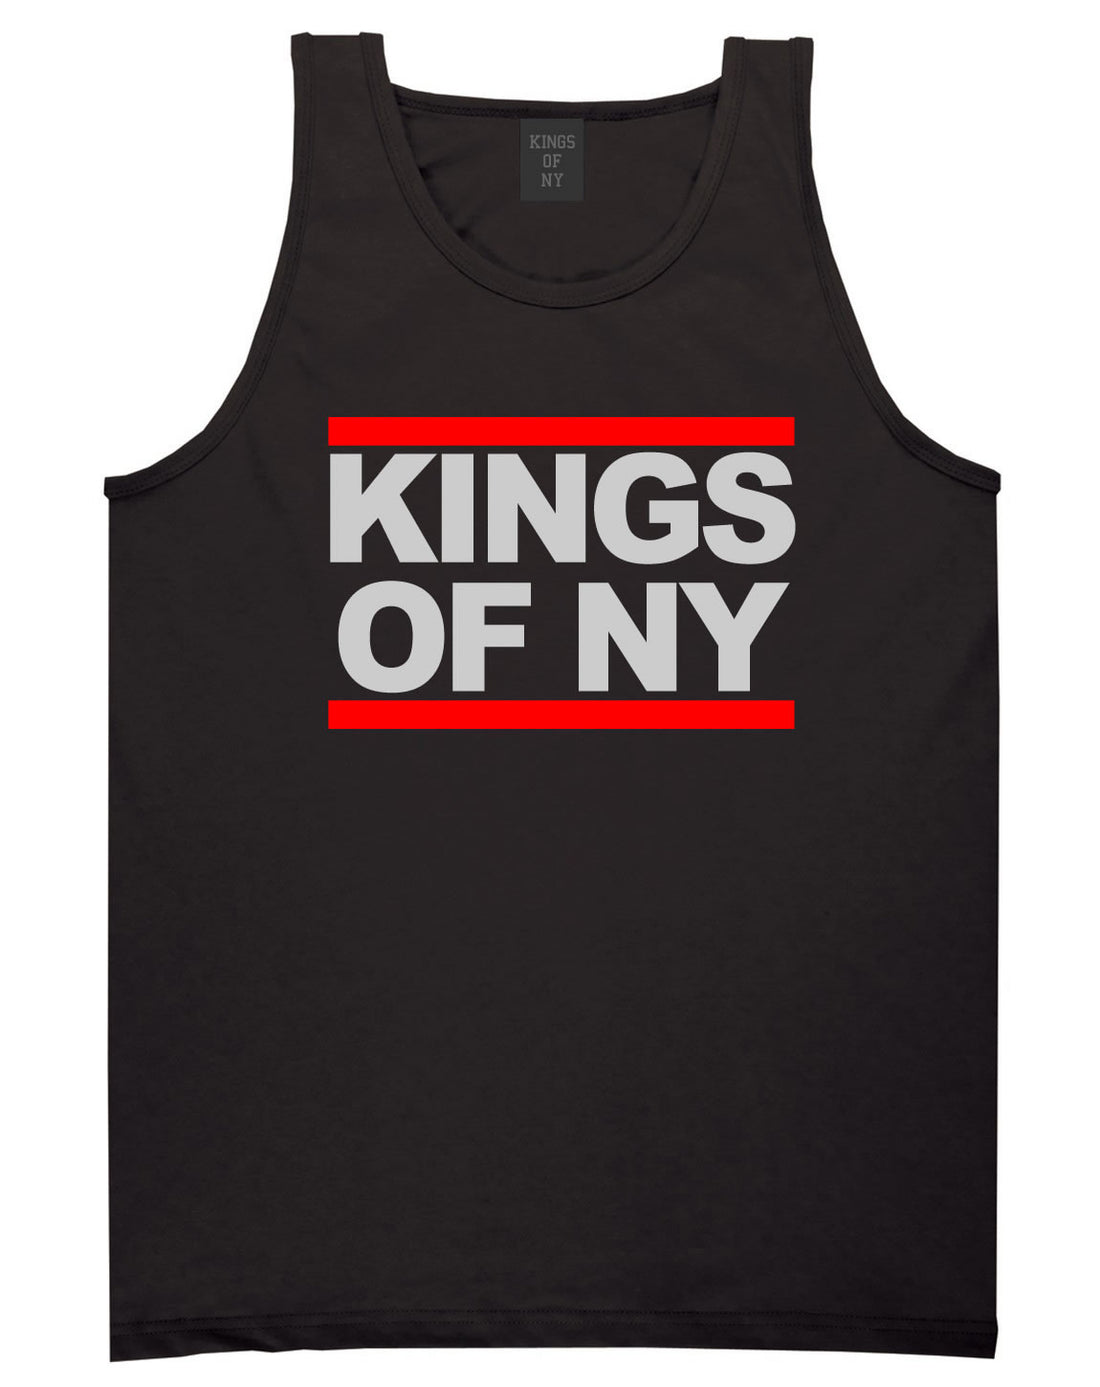 Kings Of NY Run DMC Logo Style Tank Top in Black By Kings Of NY